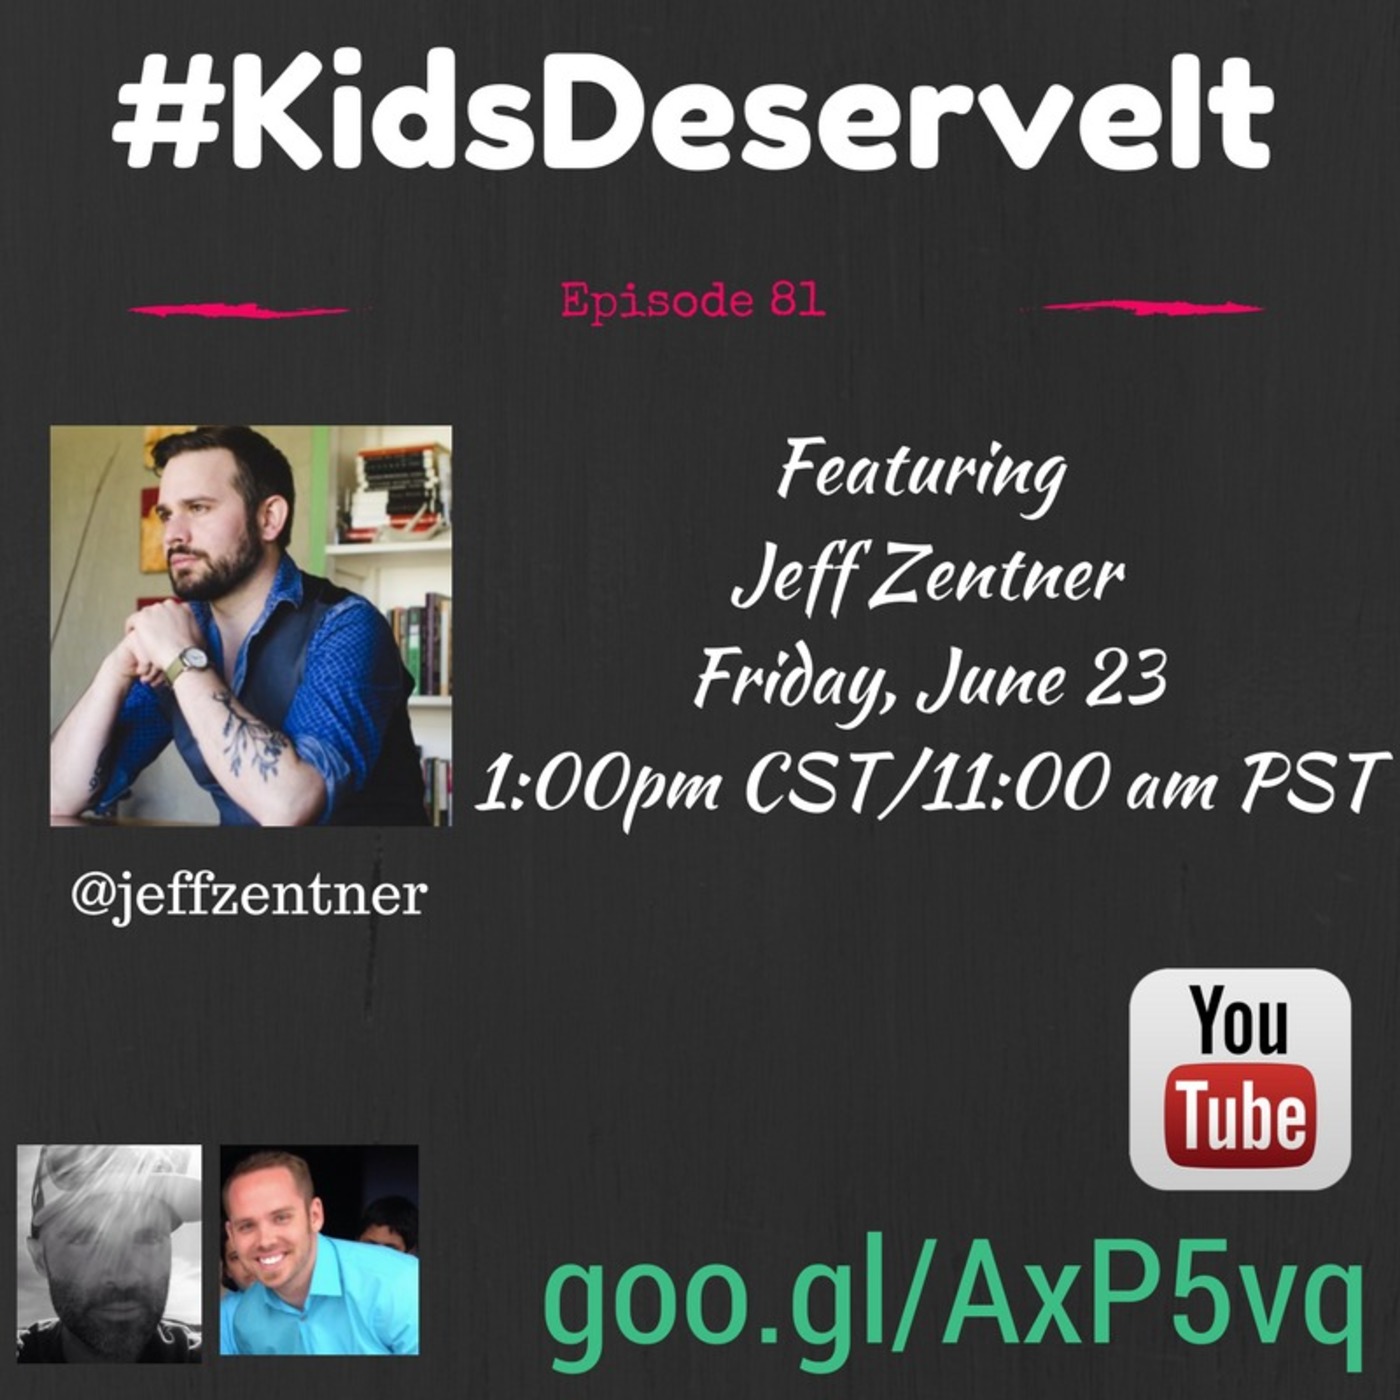 Episode 81 of #KidsDeserveIt with Jeff Zentner